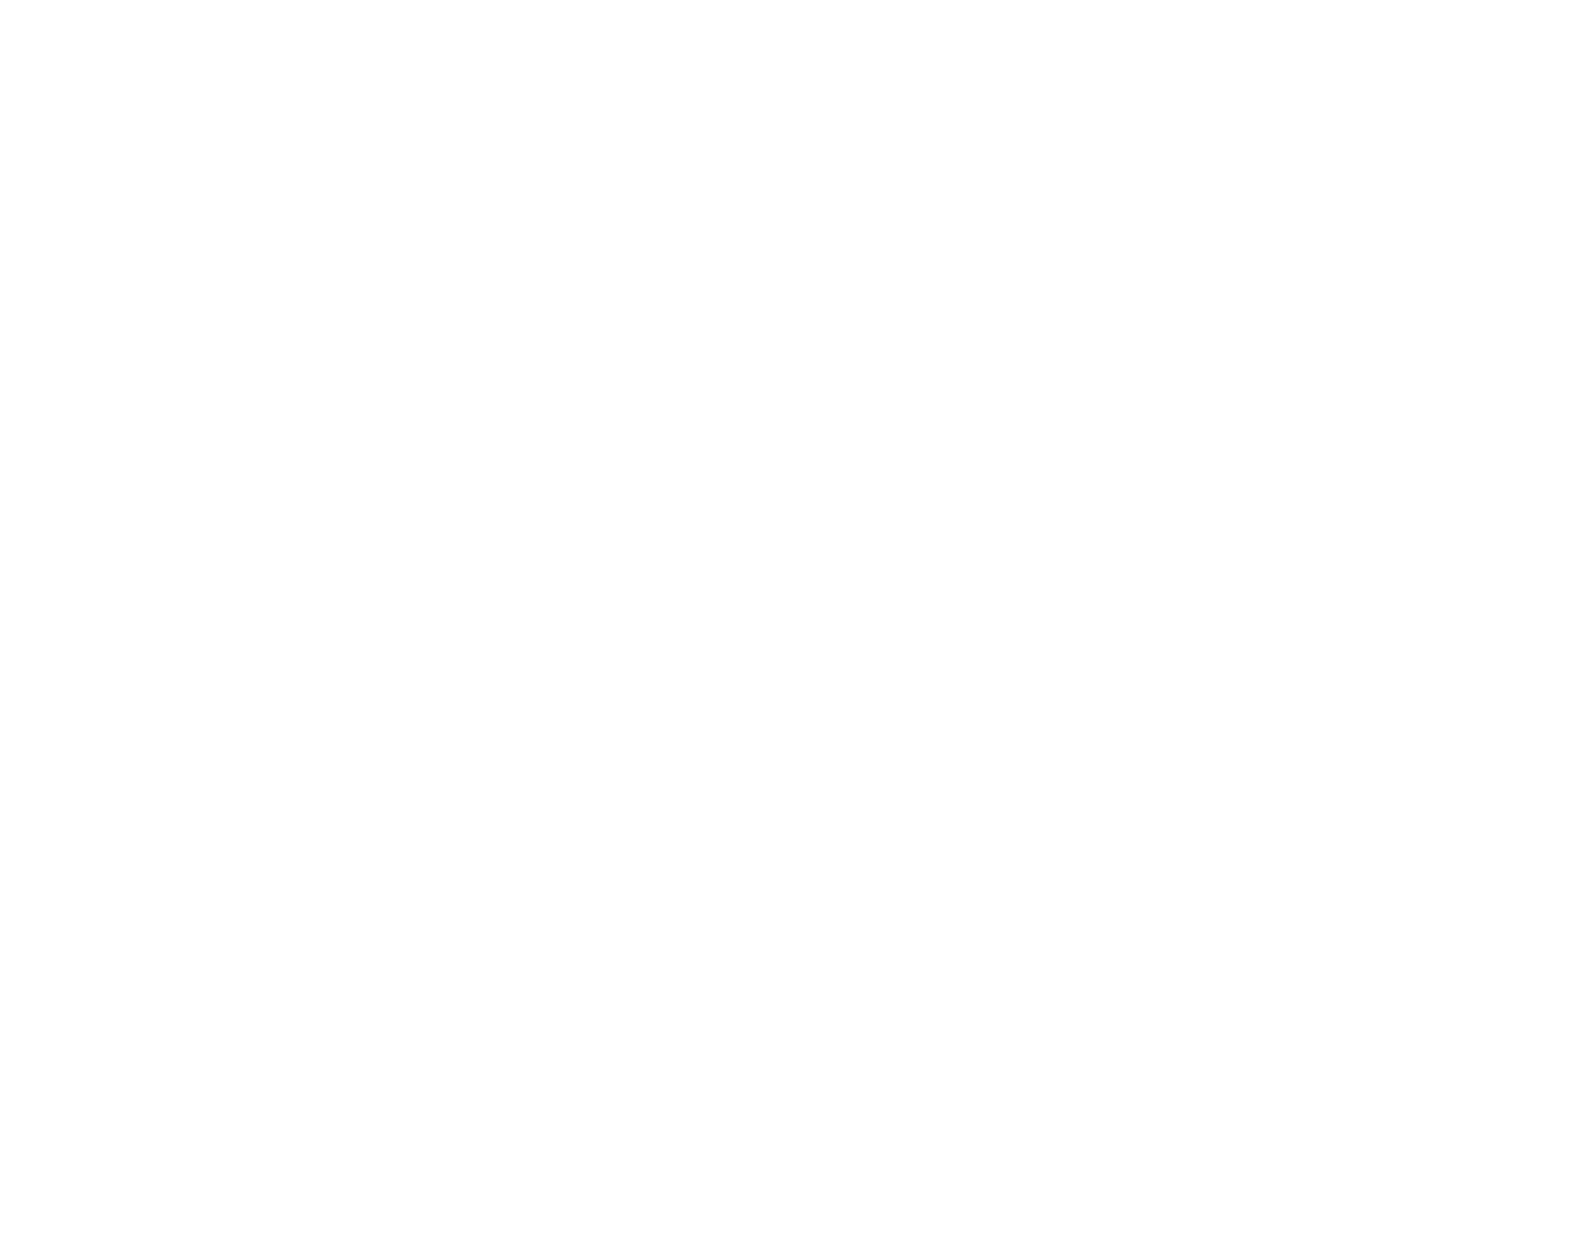 Wipro logo grand pour les fonds sombres (PNG transparent)